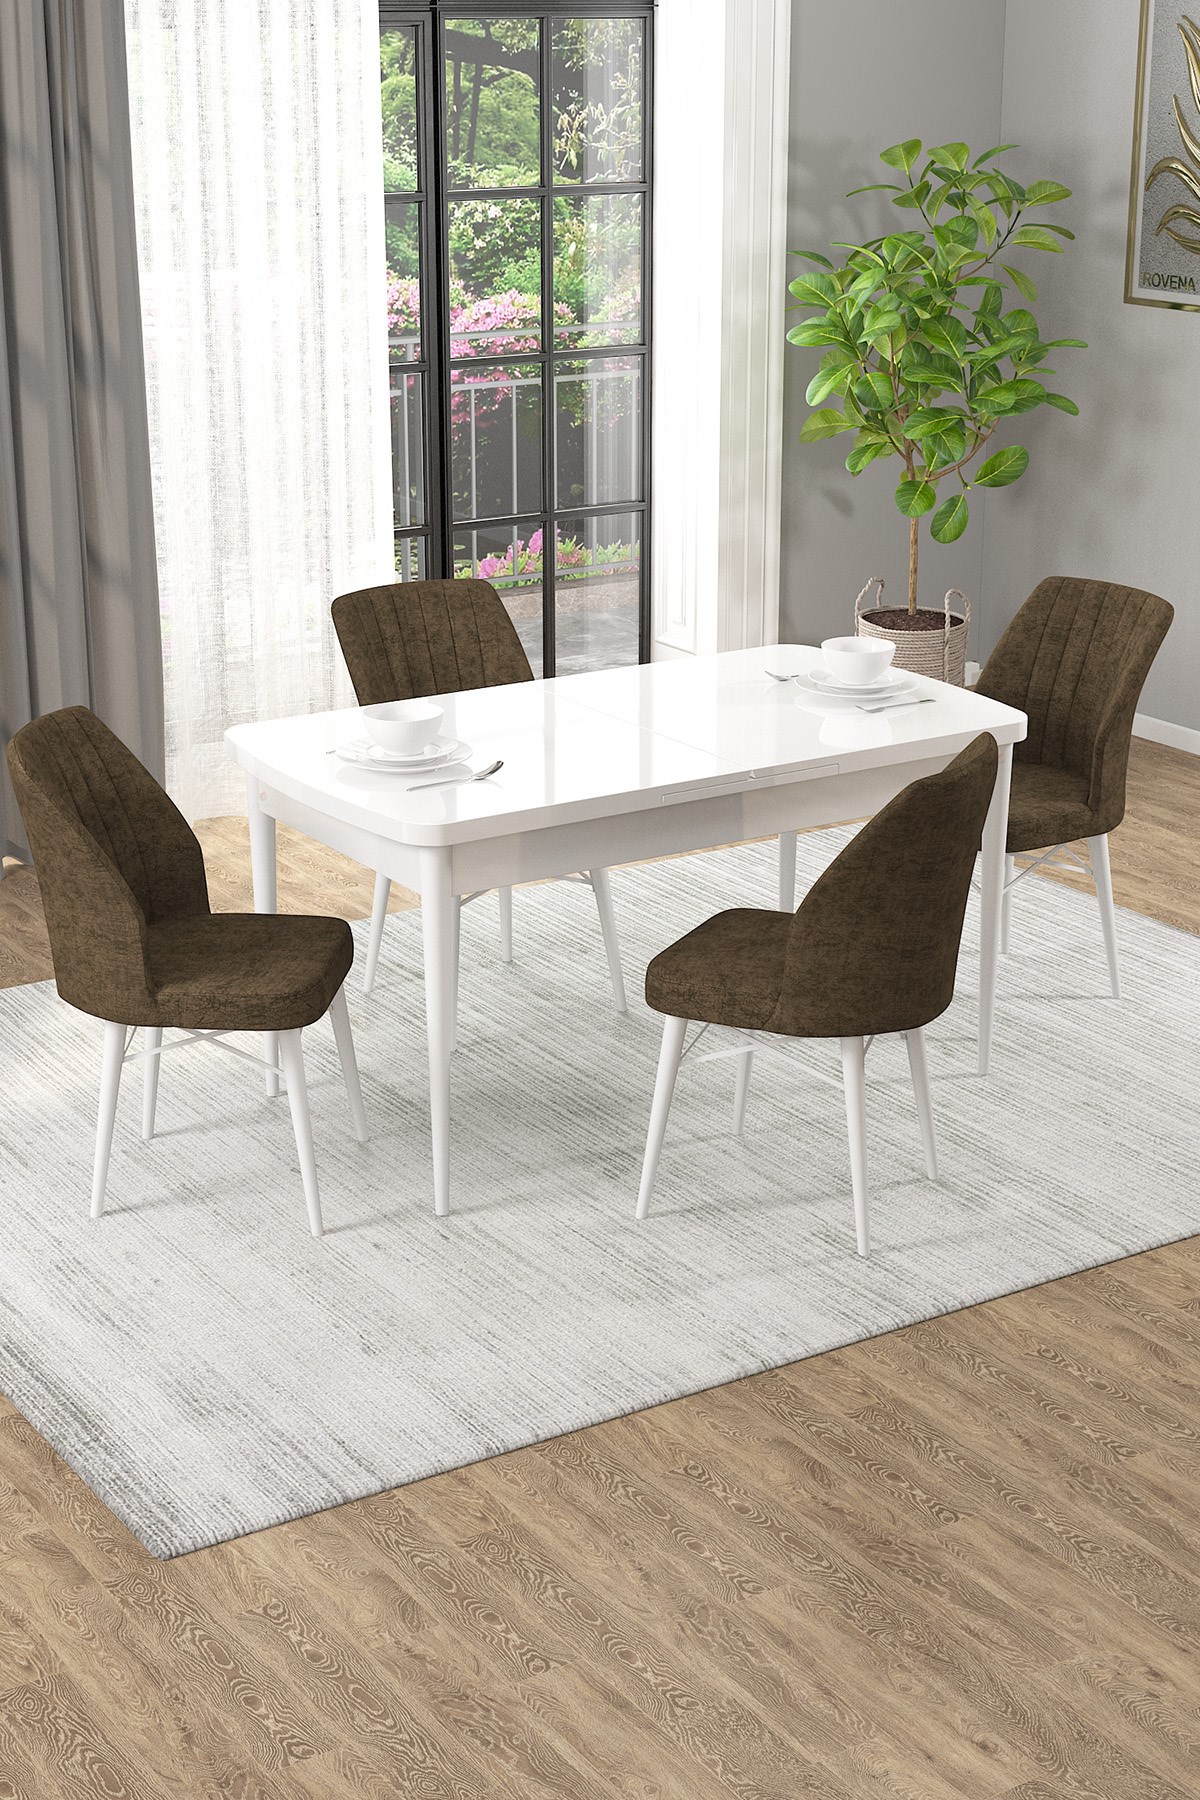 Rovena Alto Beyaz 70x114 Açılabilir Yemek Masası Takımı 4 Adet Sandalye